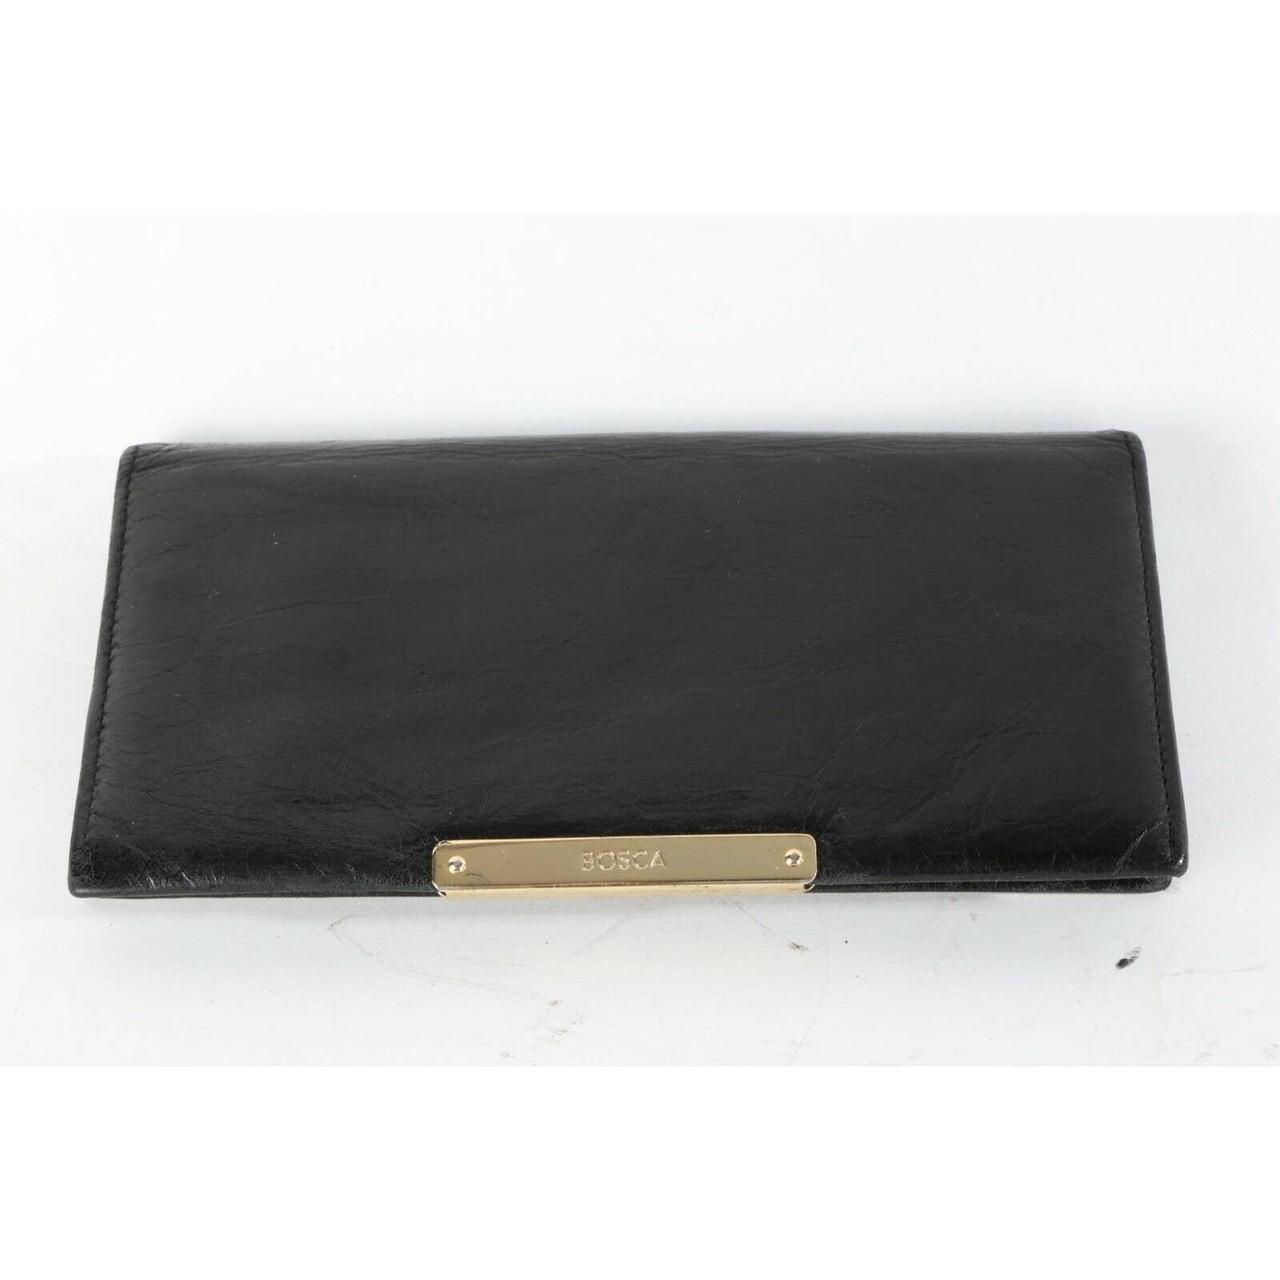 BOSCA Black Leather Flap Clutch Wallet Wallet is... - Depop